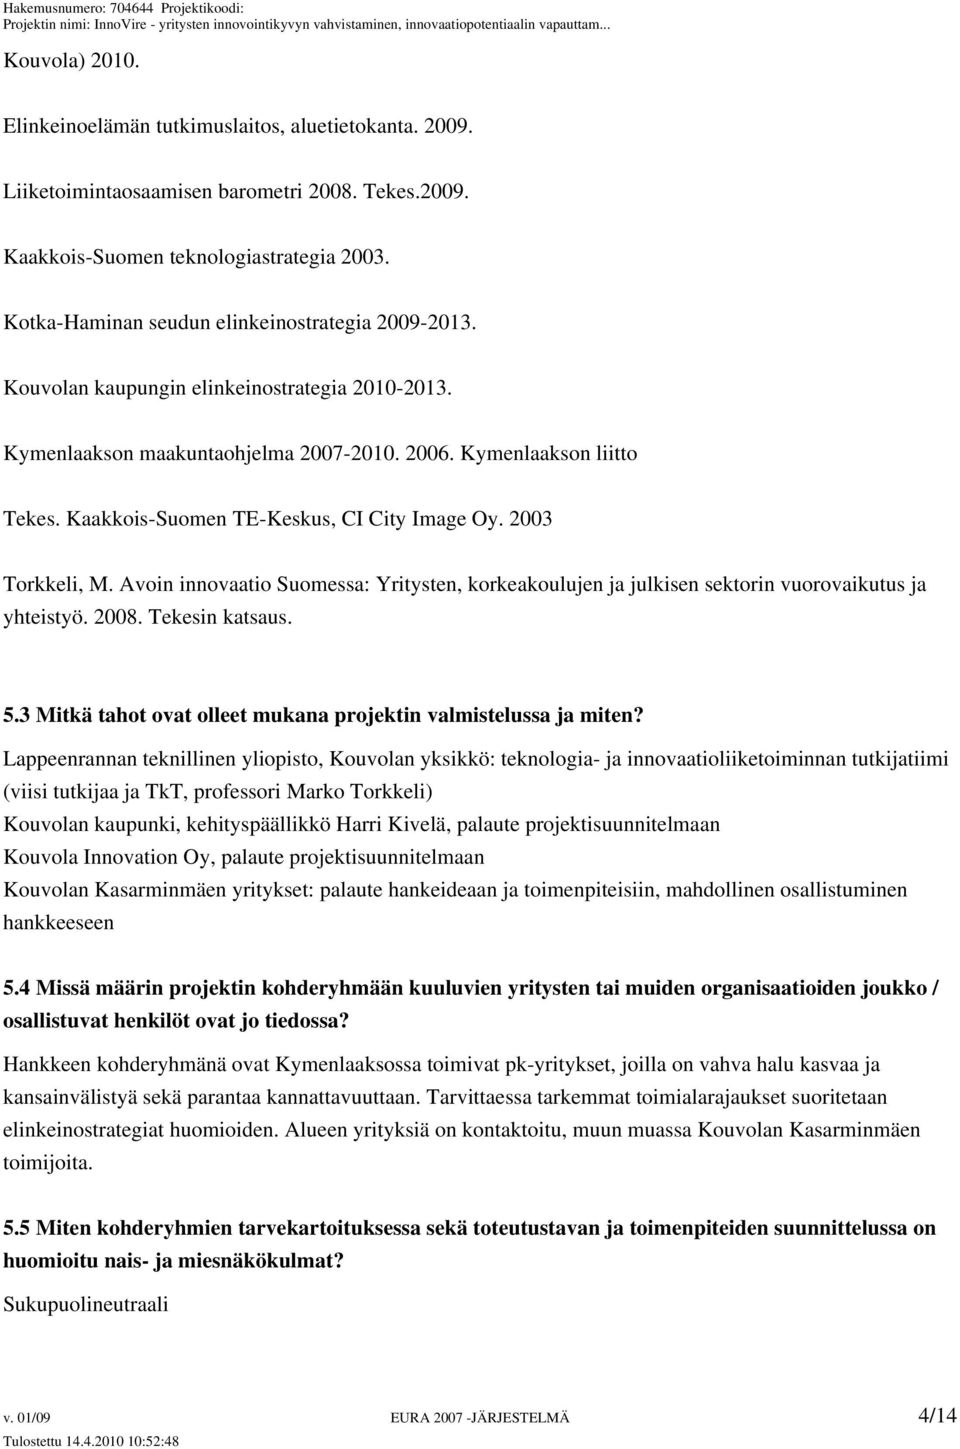 Kaakkois-Suomen TE-Keskus, CI City Image Oy. 2003 Torkkeli, M. Avoin innovaatio Suomessa: Yritysten, korkeakoulujen ja julkisen sektorin vuorovaikutus ja yhteistyö. 2008. Tekesin katsaus. 5.